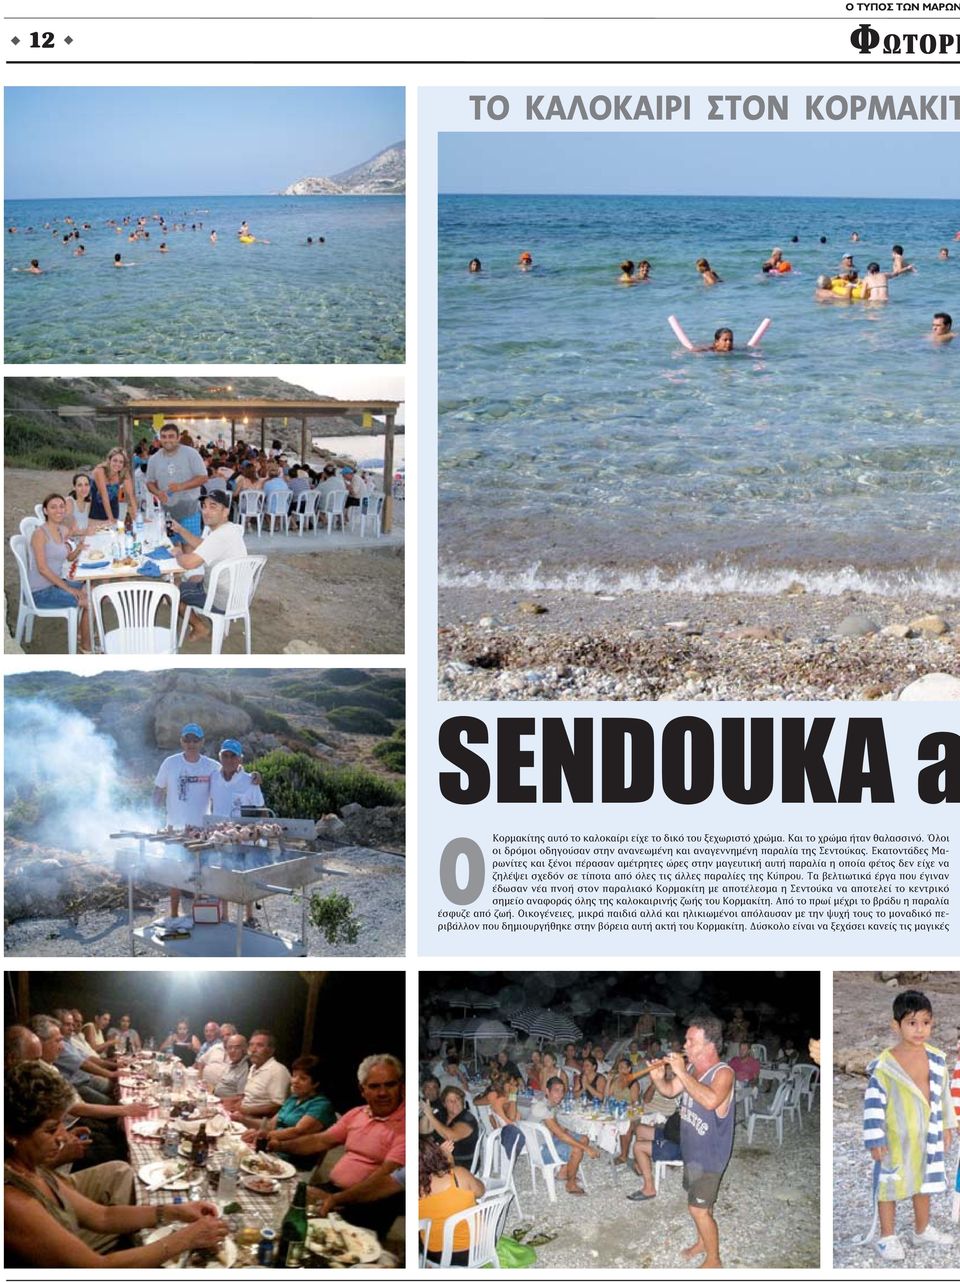 Εκατοντάδες Μαρωνίτες και ξένοι πέρασαν αμέτρητες ώρες στην μαγευτική αυτή παραλία η οποία φέτος δεν είχε να ζηλέψει σχεδόν σε τίποτα από όλες τις άλλες παραλίες της Κύπρου.